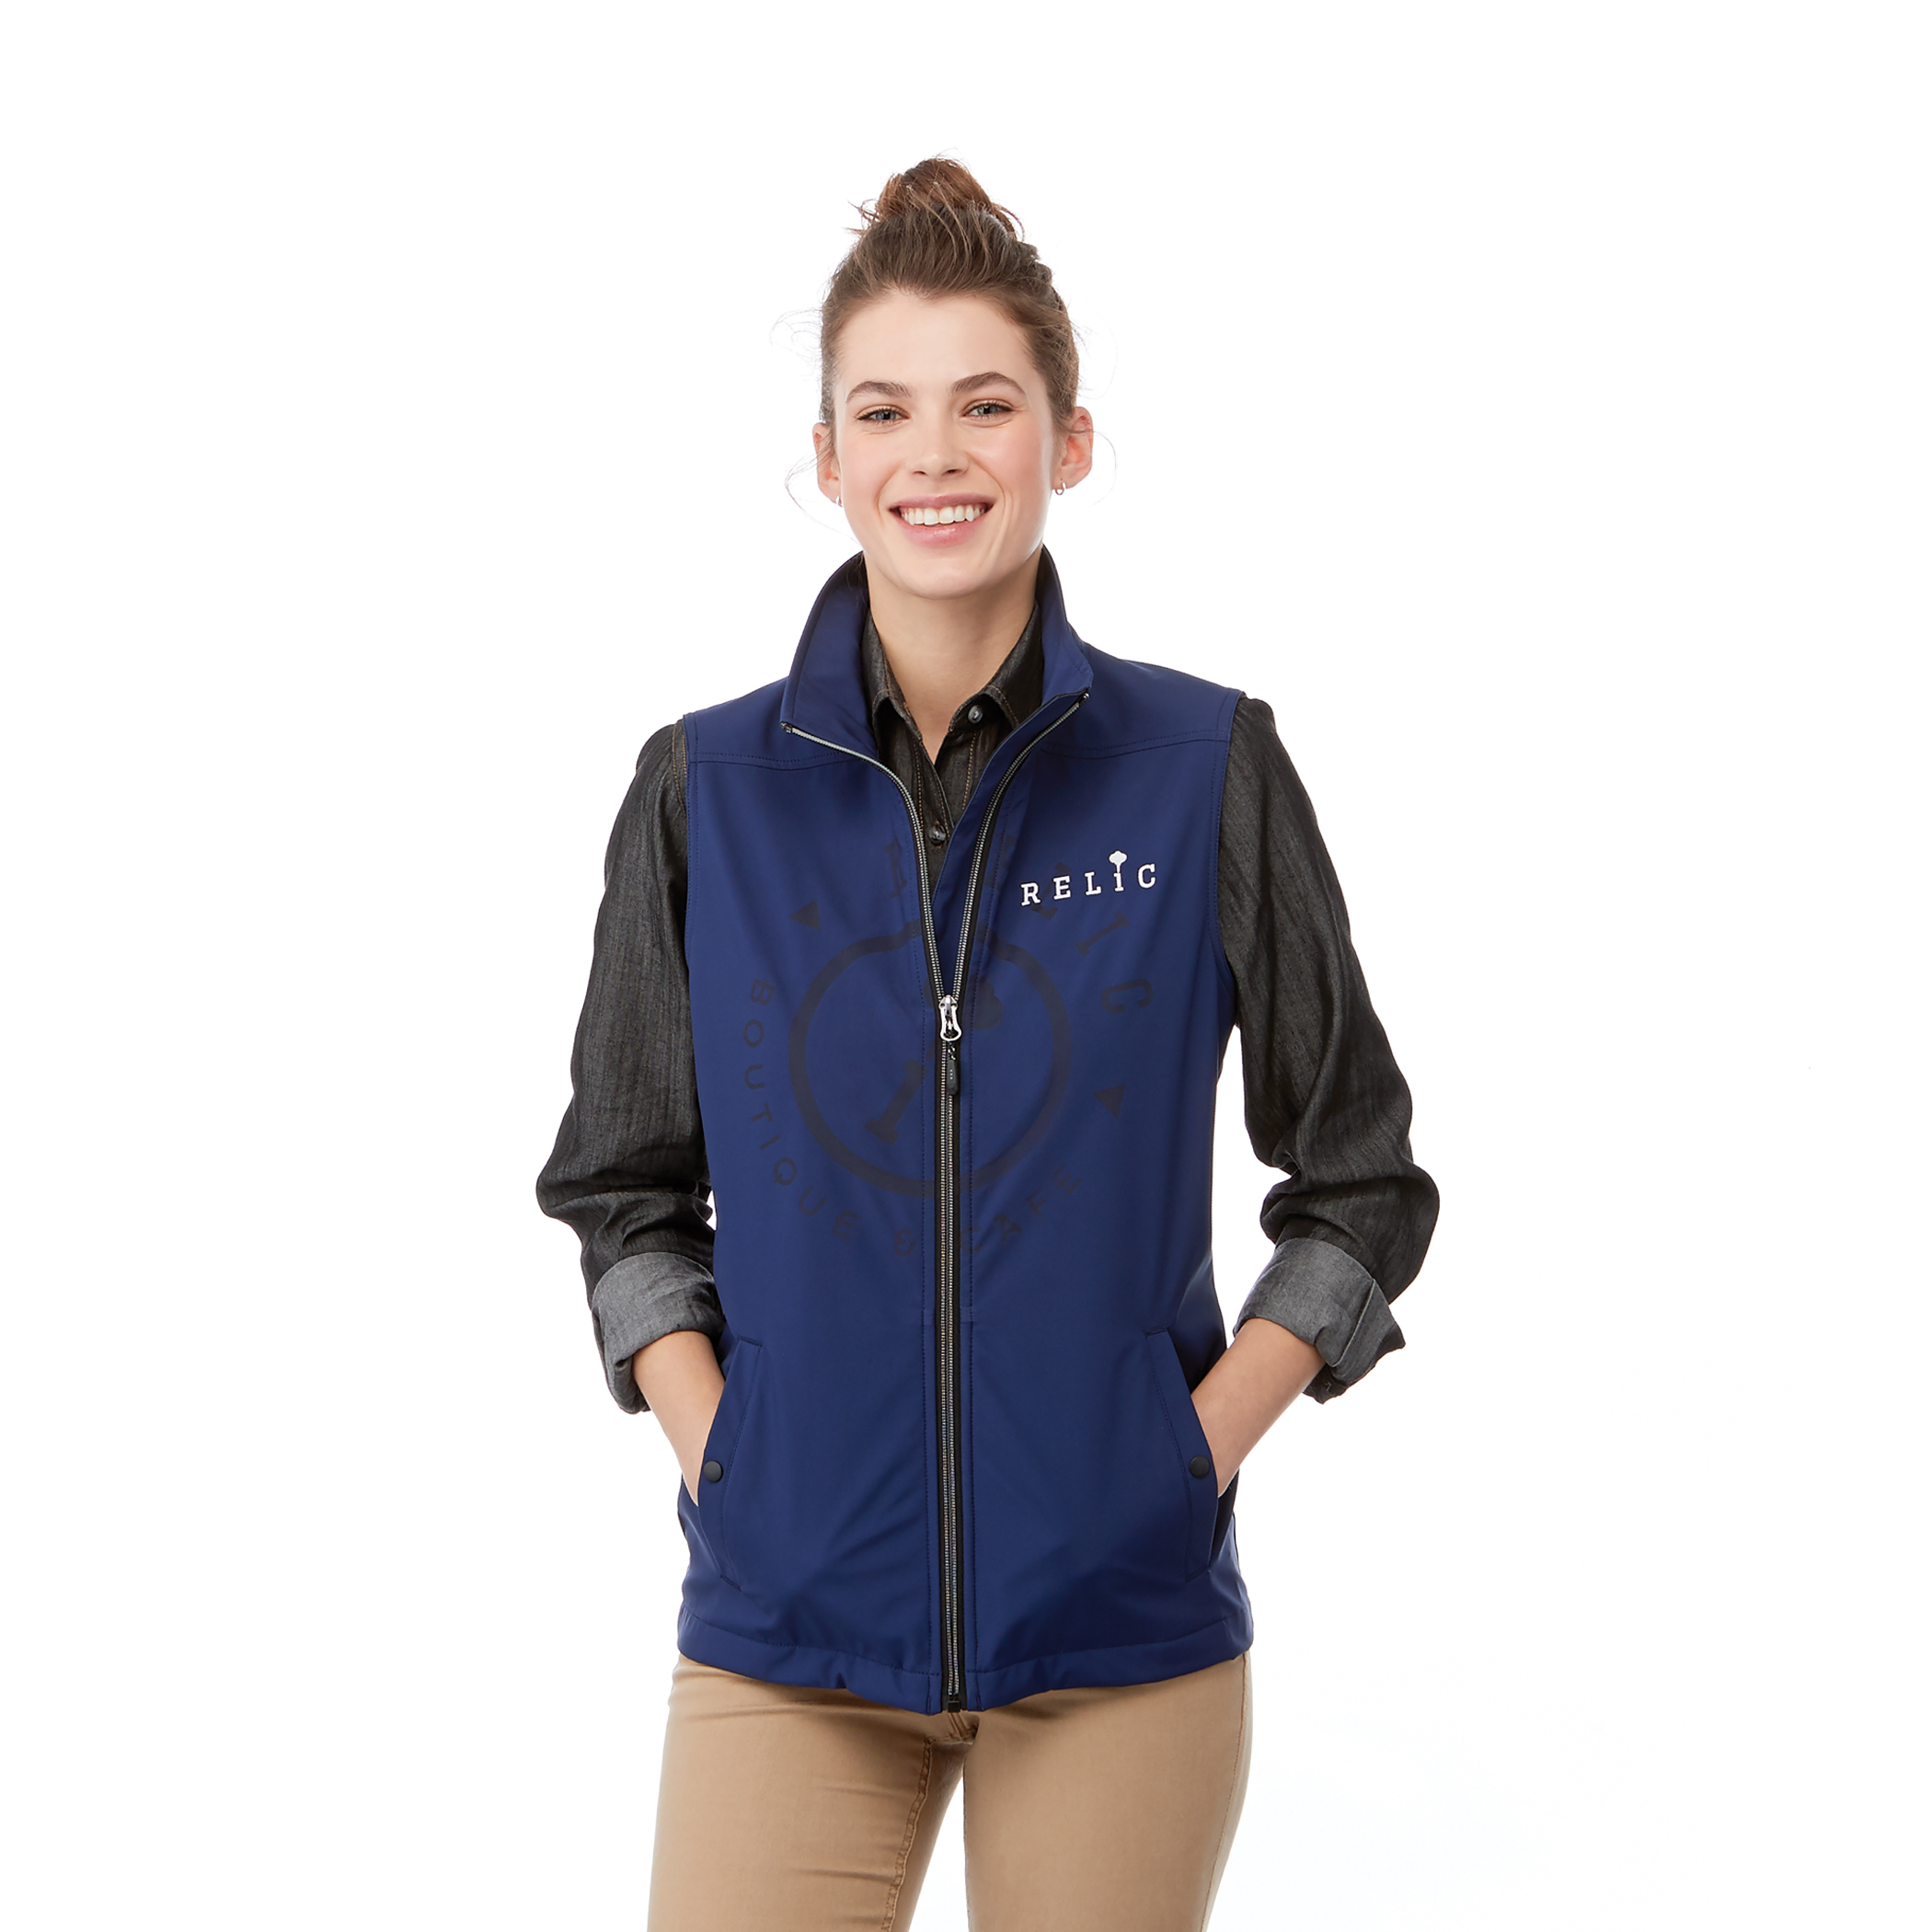 BAW Athletic Wear ST21 - Women's Softshell Jacket $27.60 - Outerwear